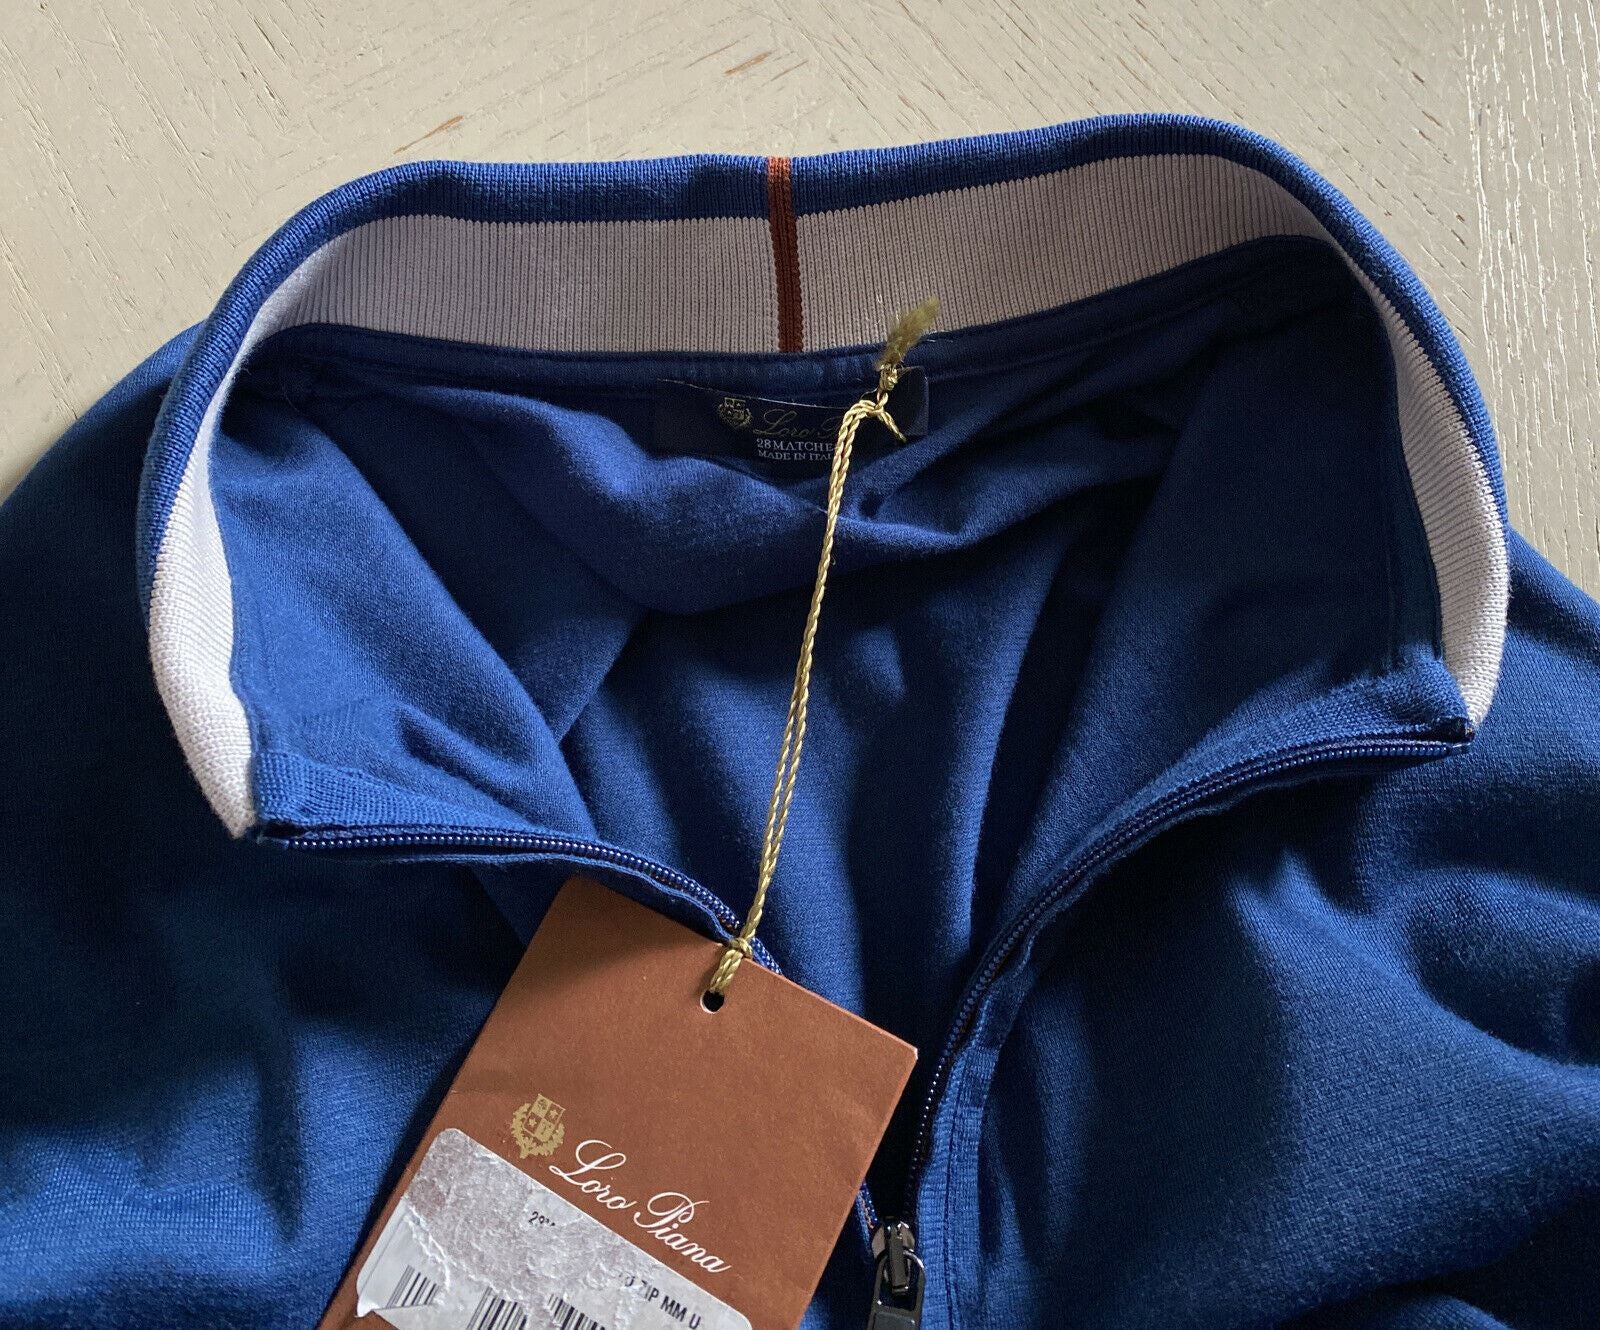 Neu mit Etikett: 735 $ Loro Piana Baumwoll-/Polyester-Poloshirt mit Ärmeln, Blau, Größe M